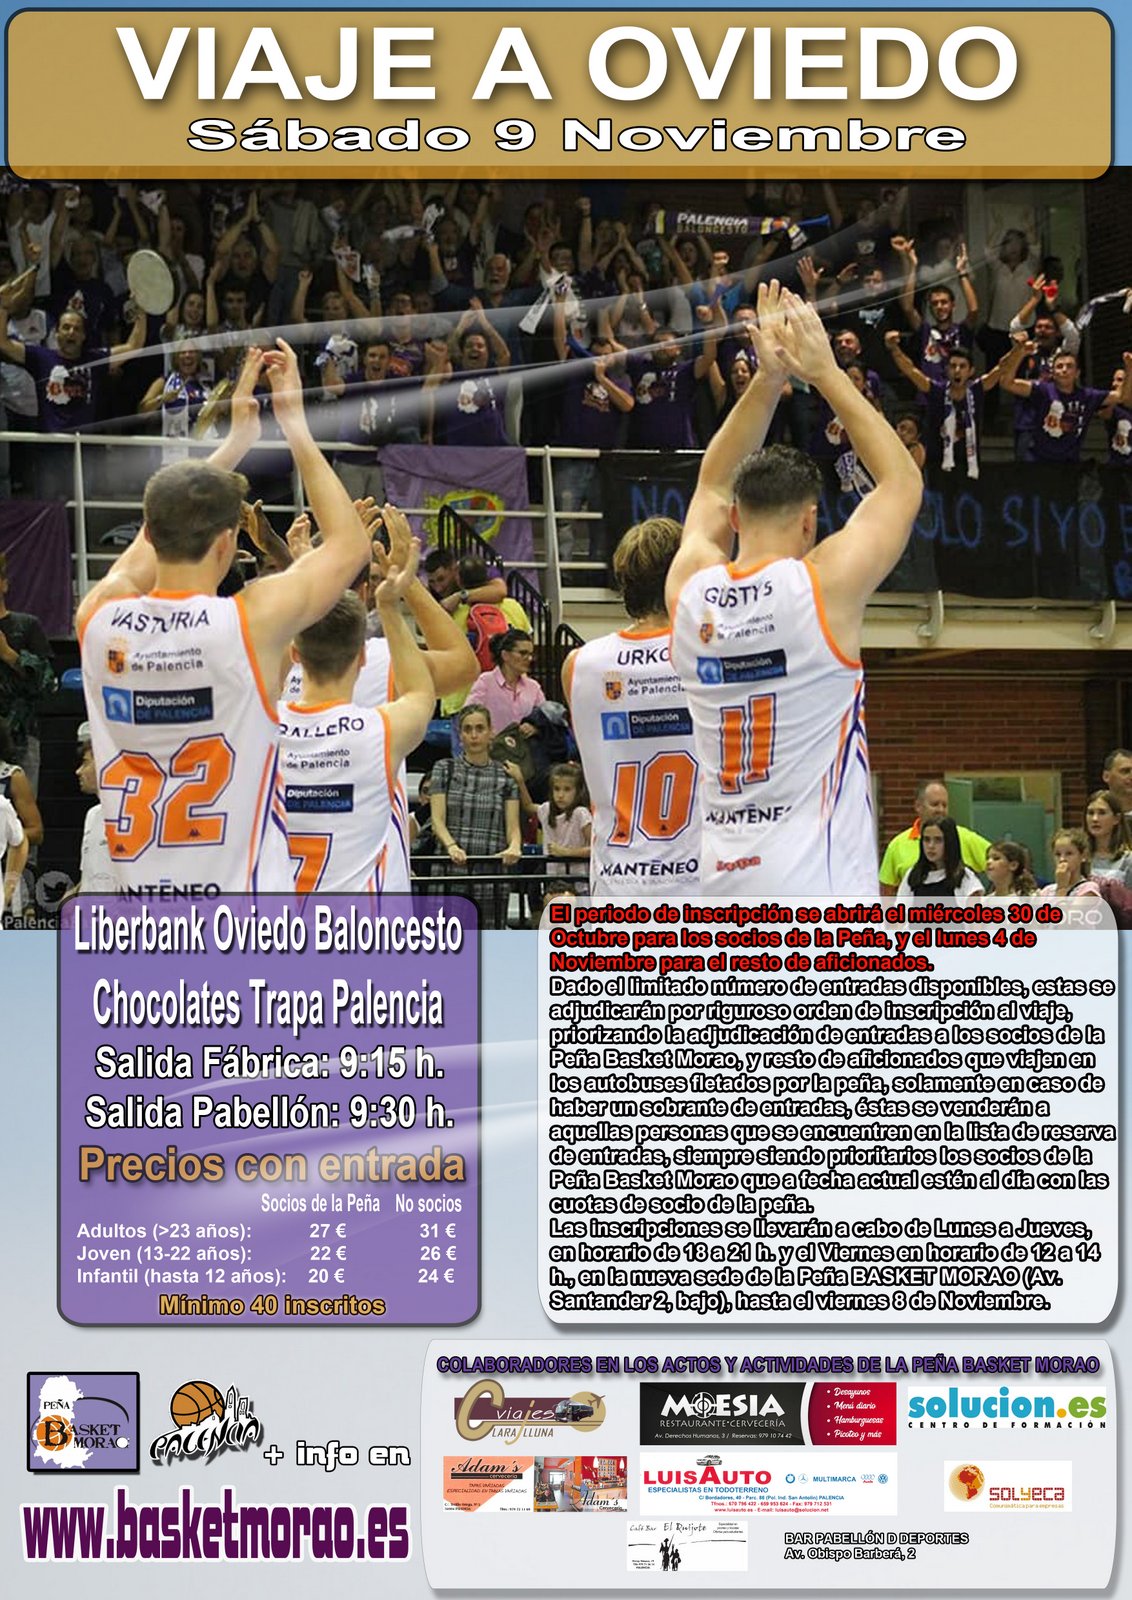 La Peña Basket Morao se va de viaje a Oviedo